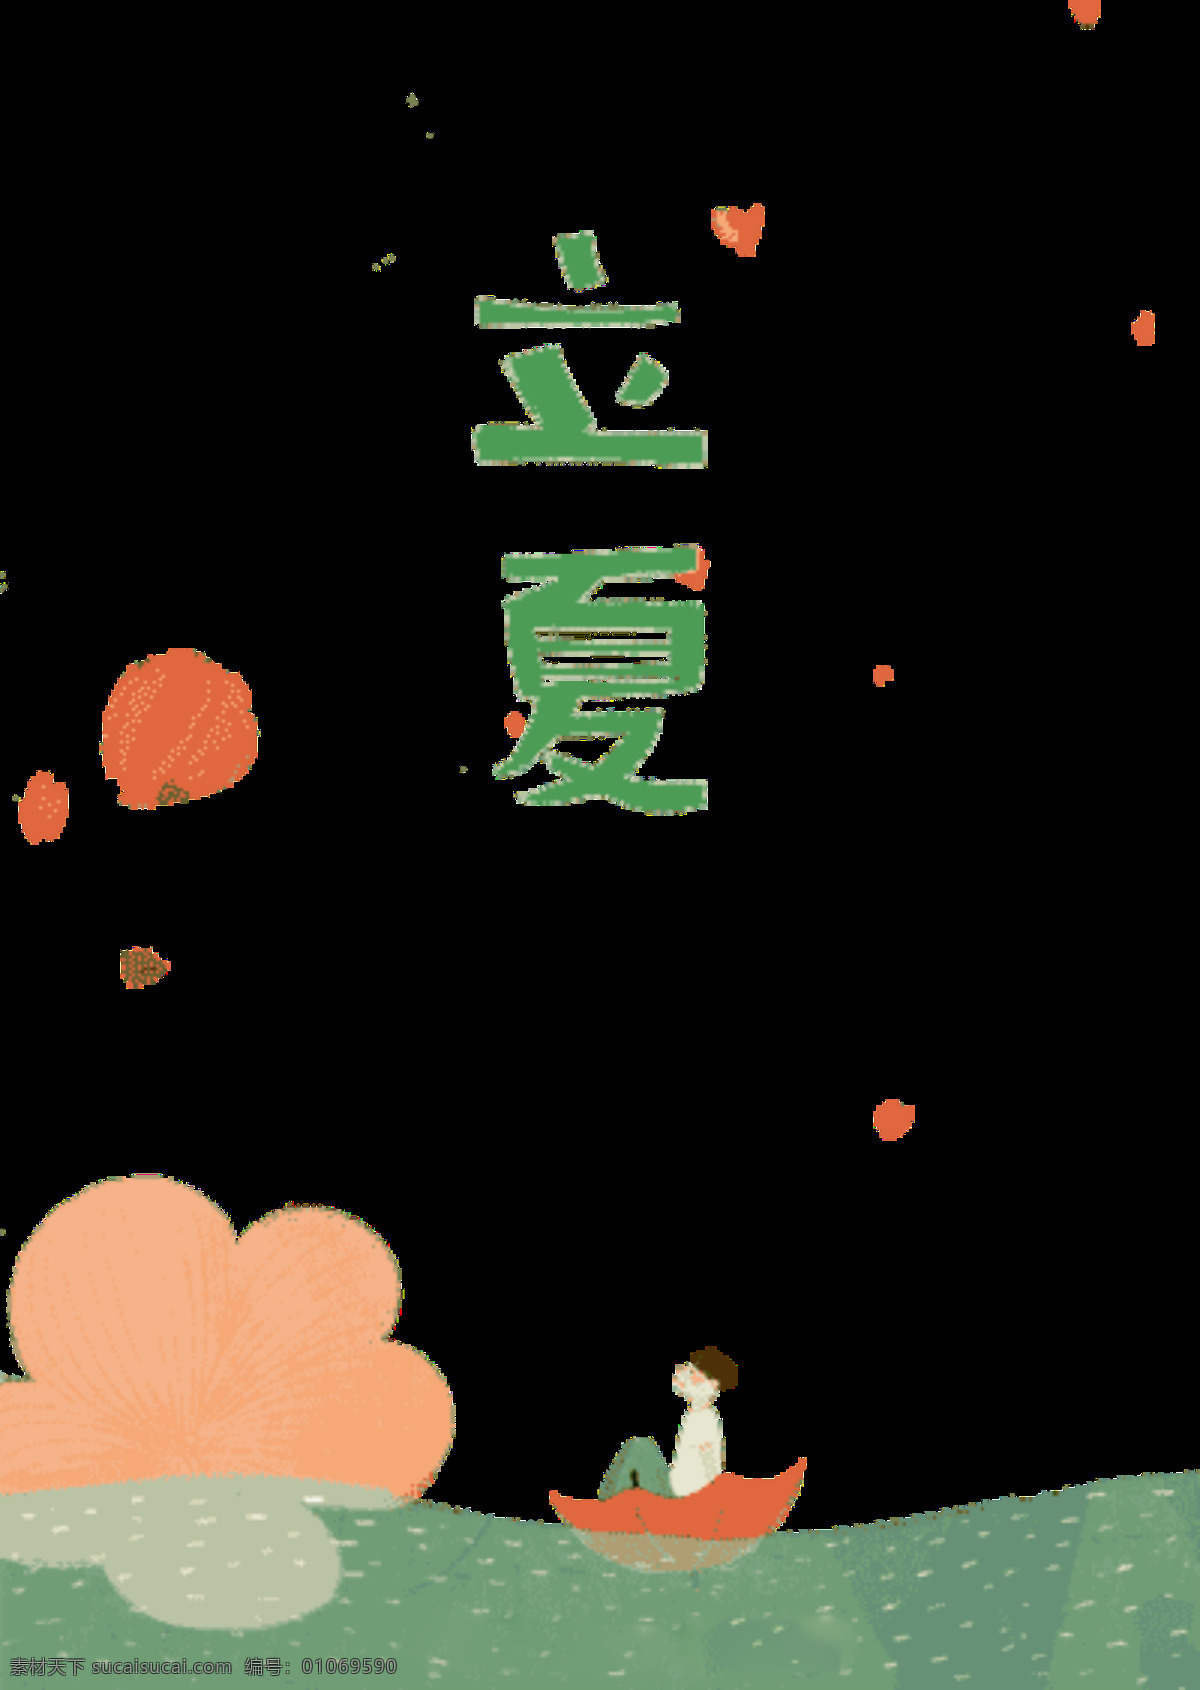 清新 呆 萌 立夏 二十四节气 橙色花纹 枫叶 节日元素 草地 船只 绿色字体 节气元素 立夏元素